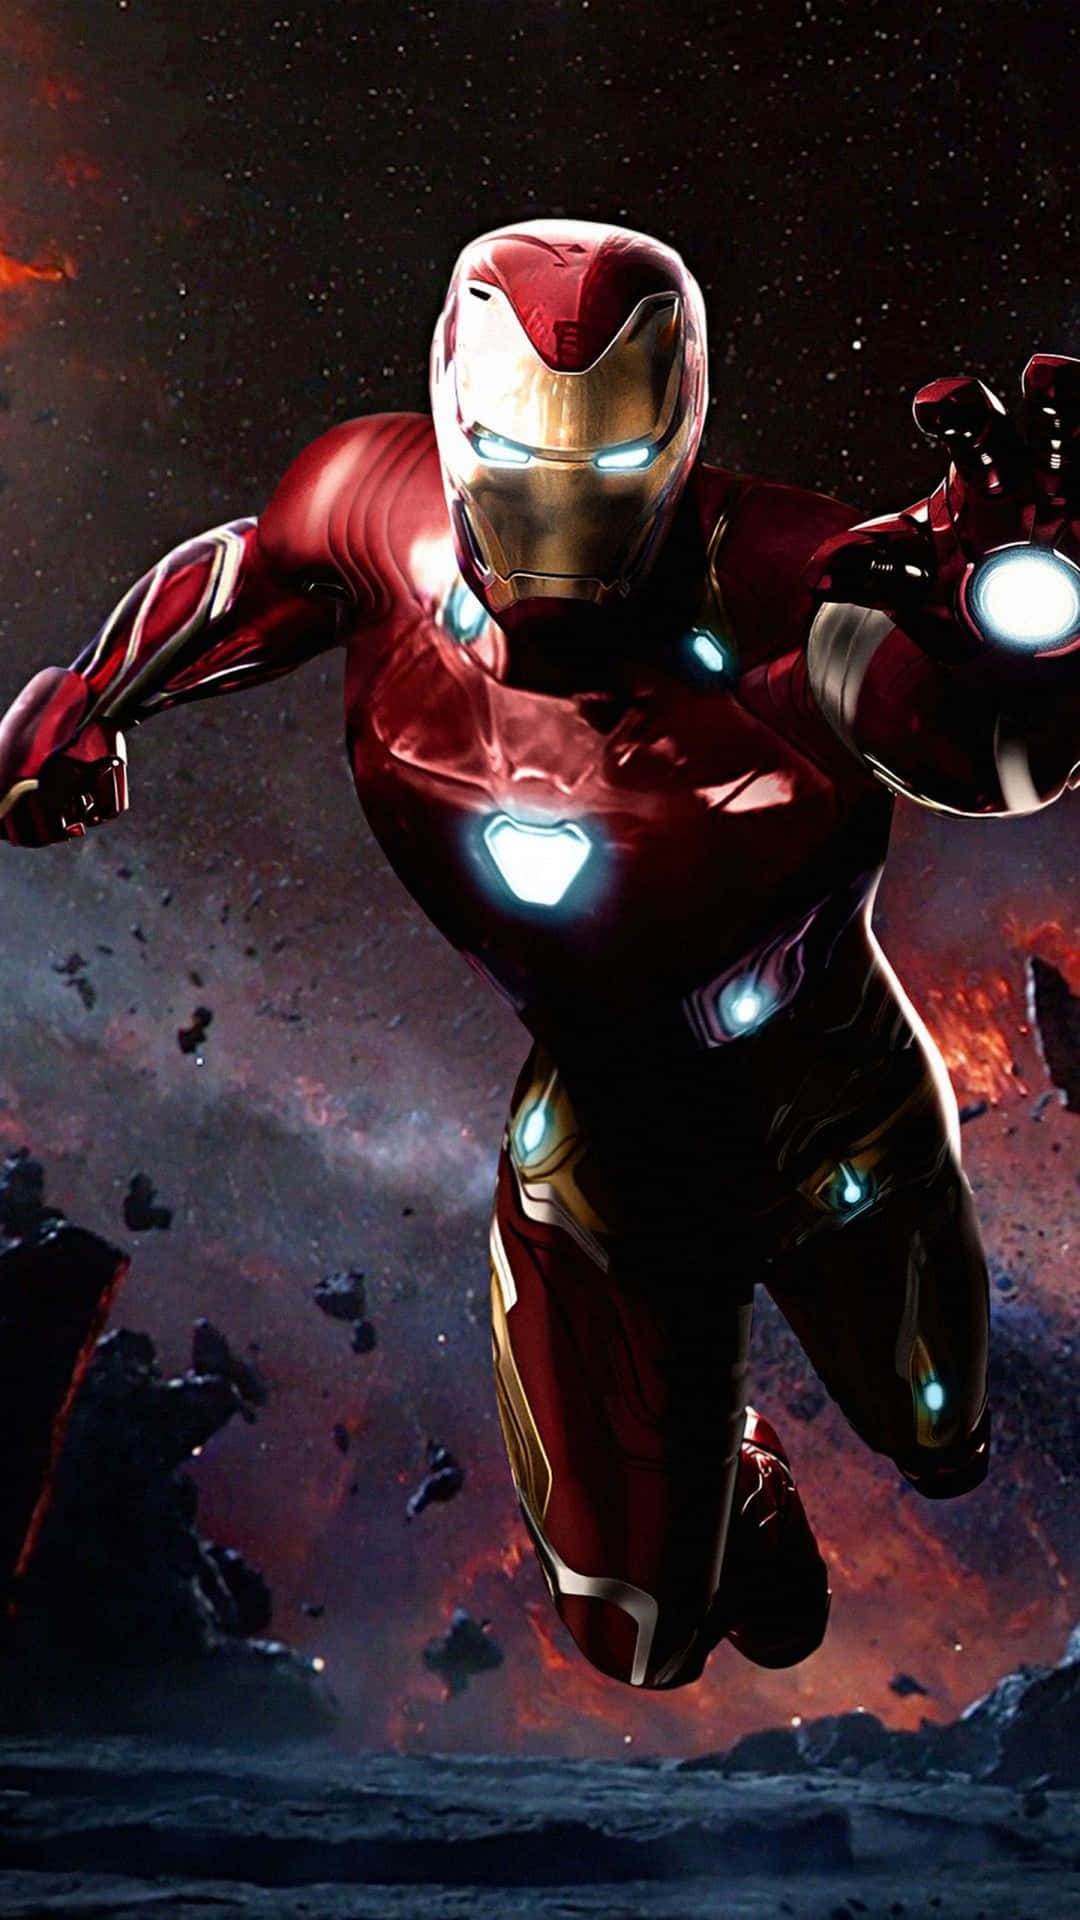 Wallpapergör Dig Redo Att Uppleva Iron Man I Högsta Upplösning Med Denna 4k Mobilbakgrund. Wallpaper